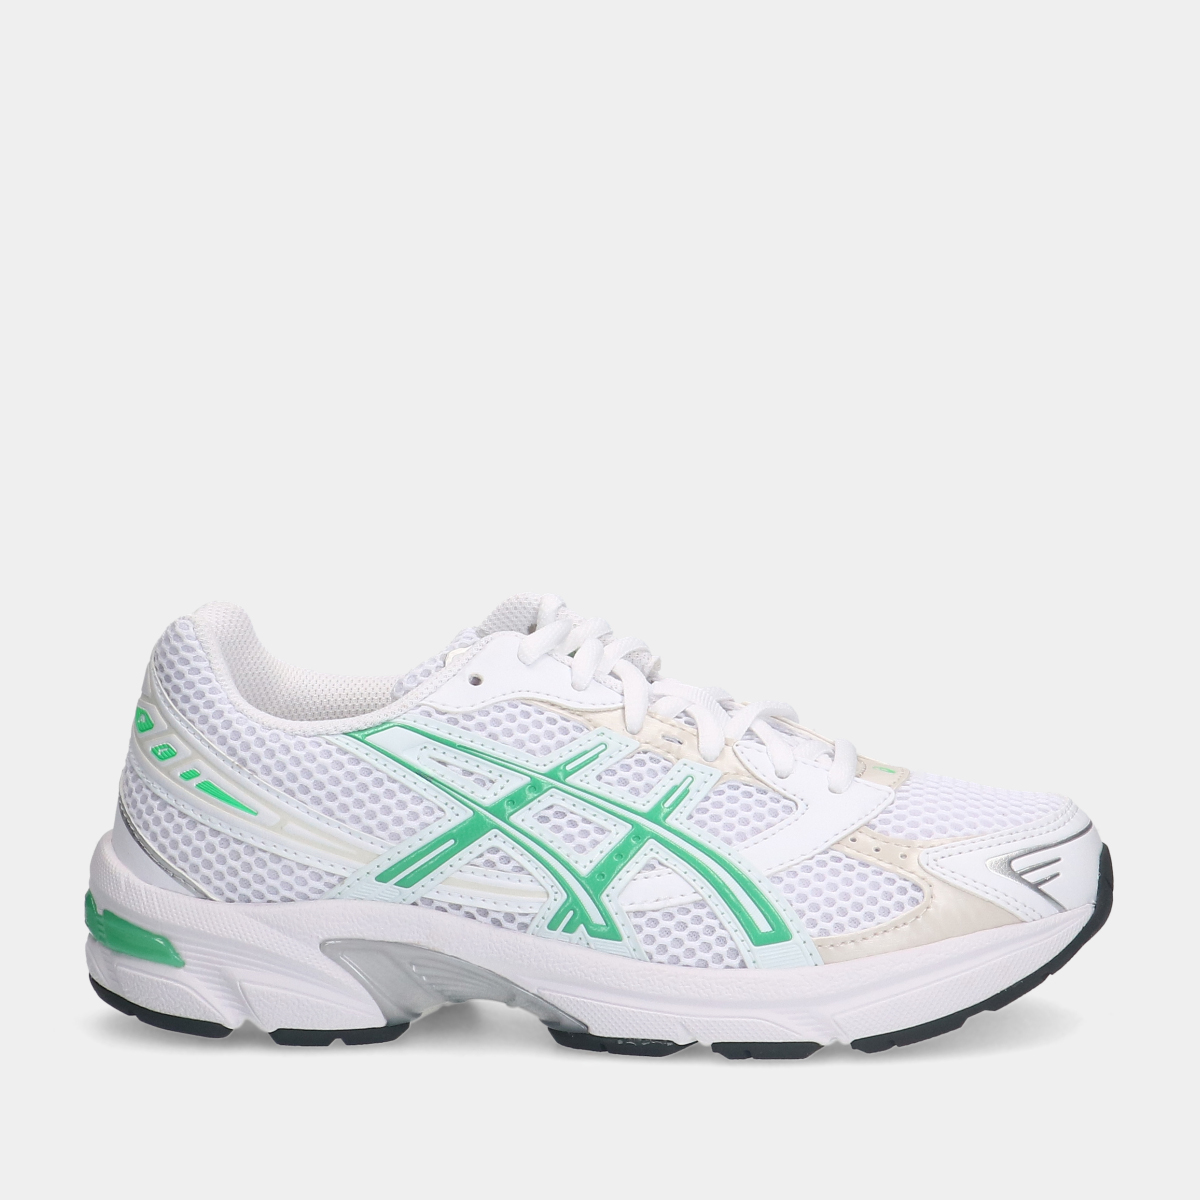 Asics GEL-1130 White/ Green sneakers